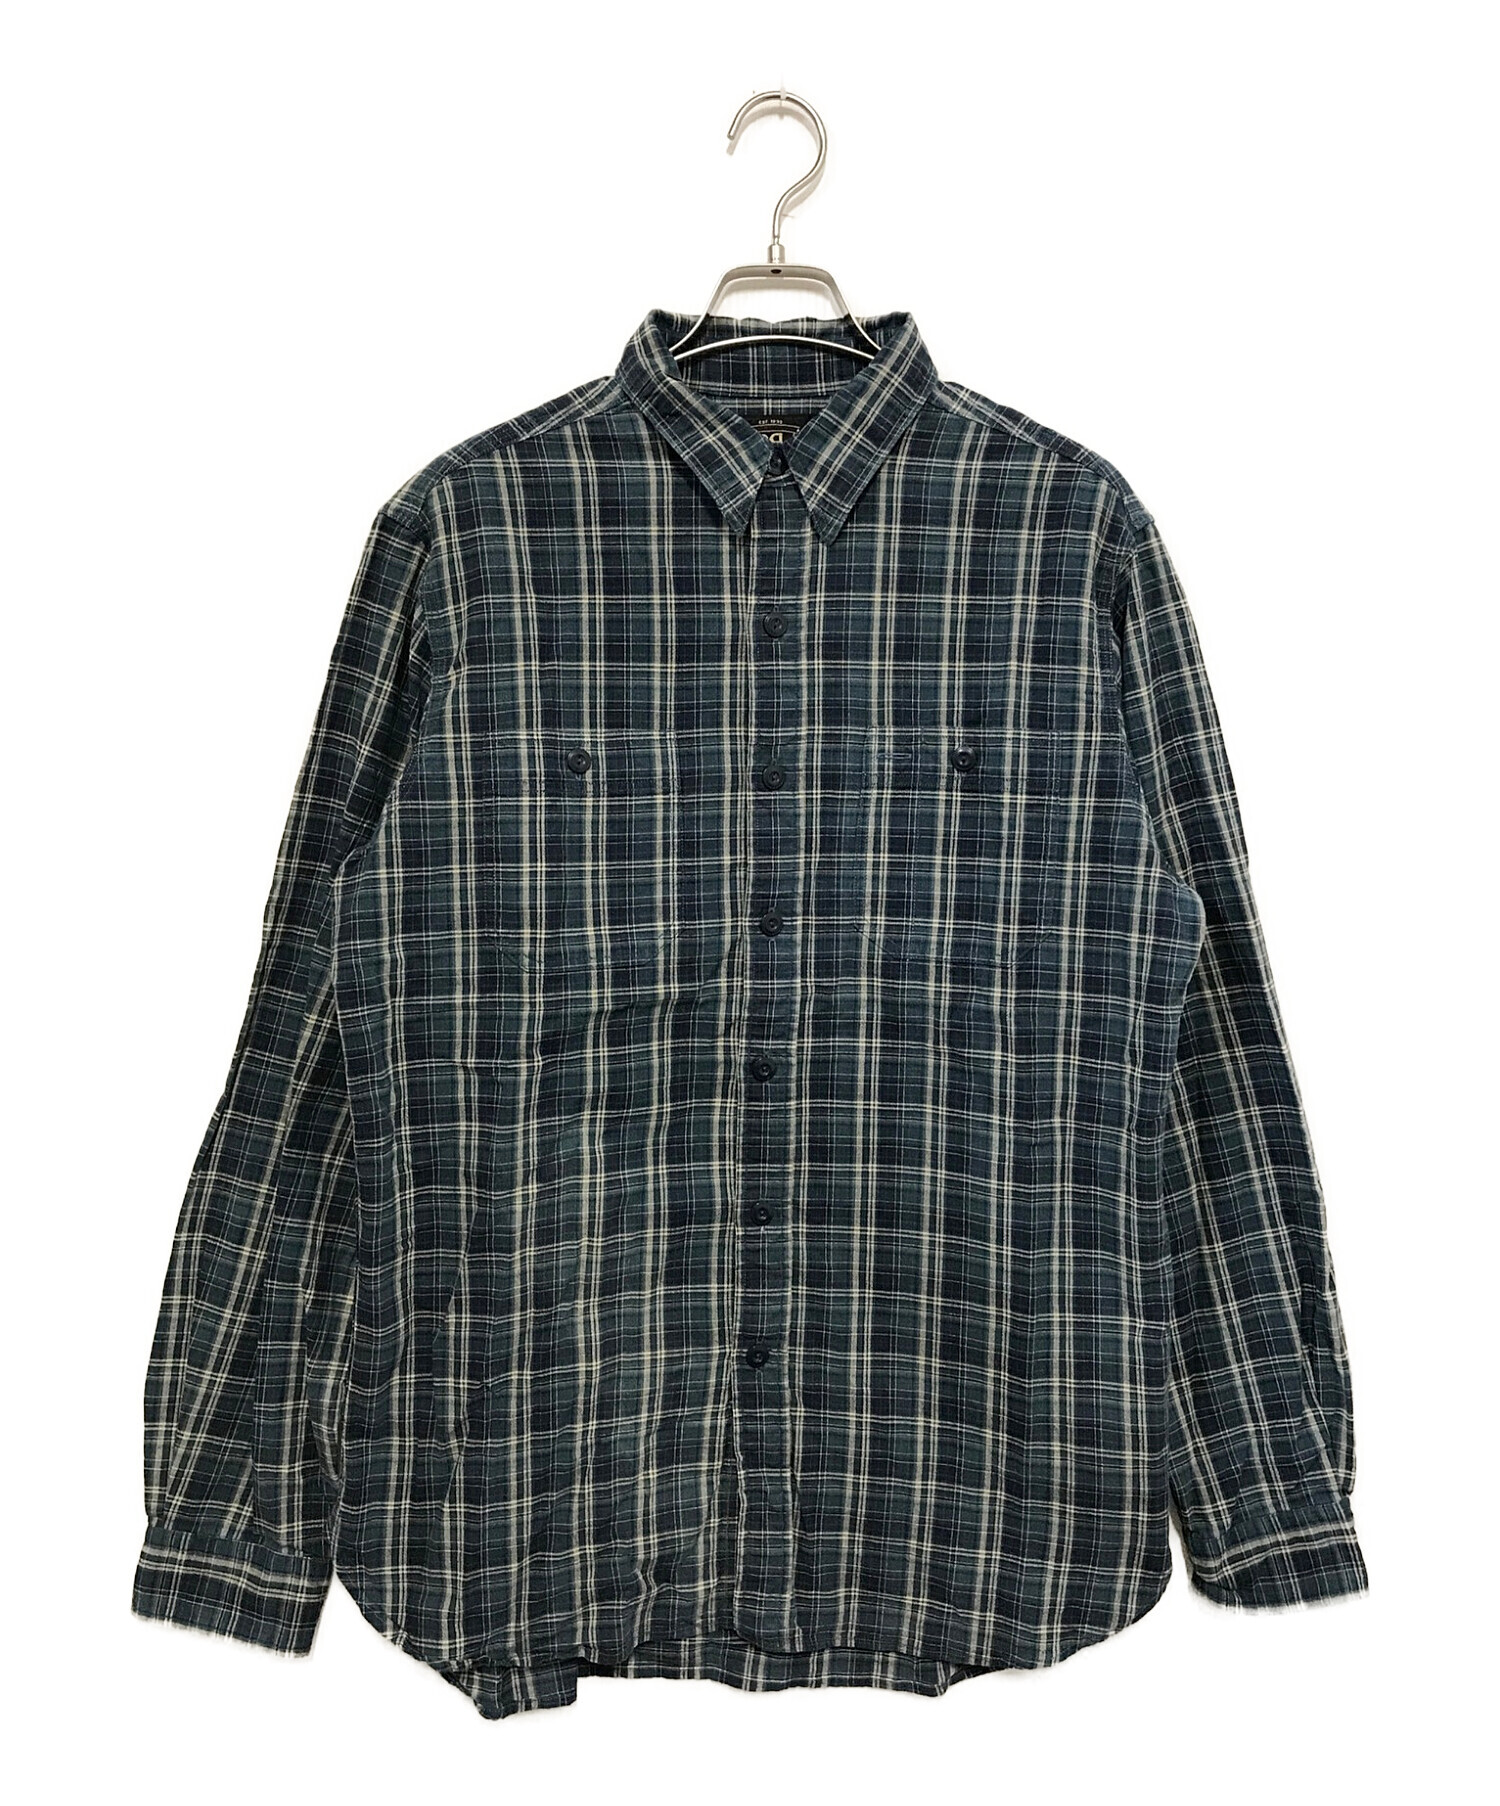 RRL (ダブルアールエル) コットンチェックシャツ ネイビー サイズ:M